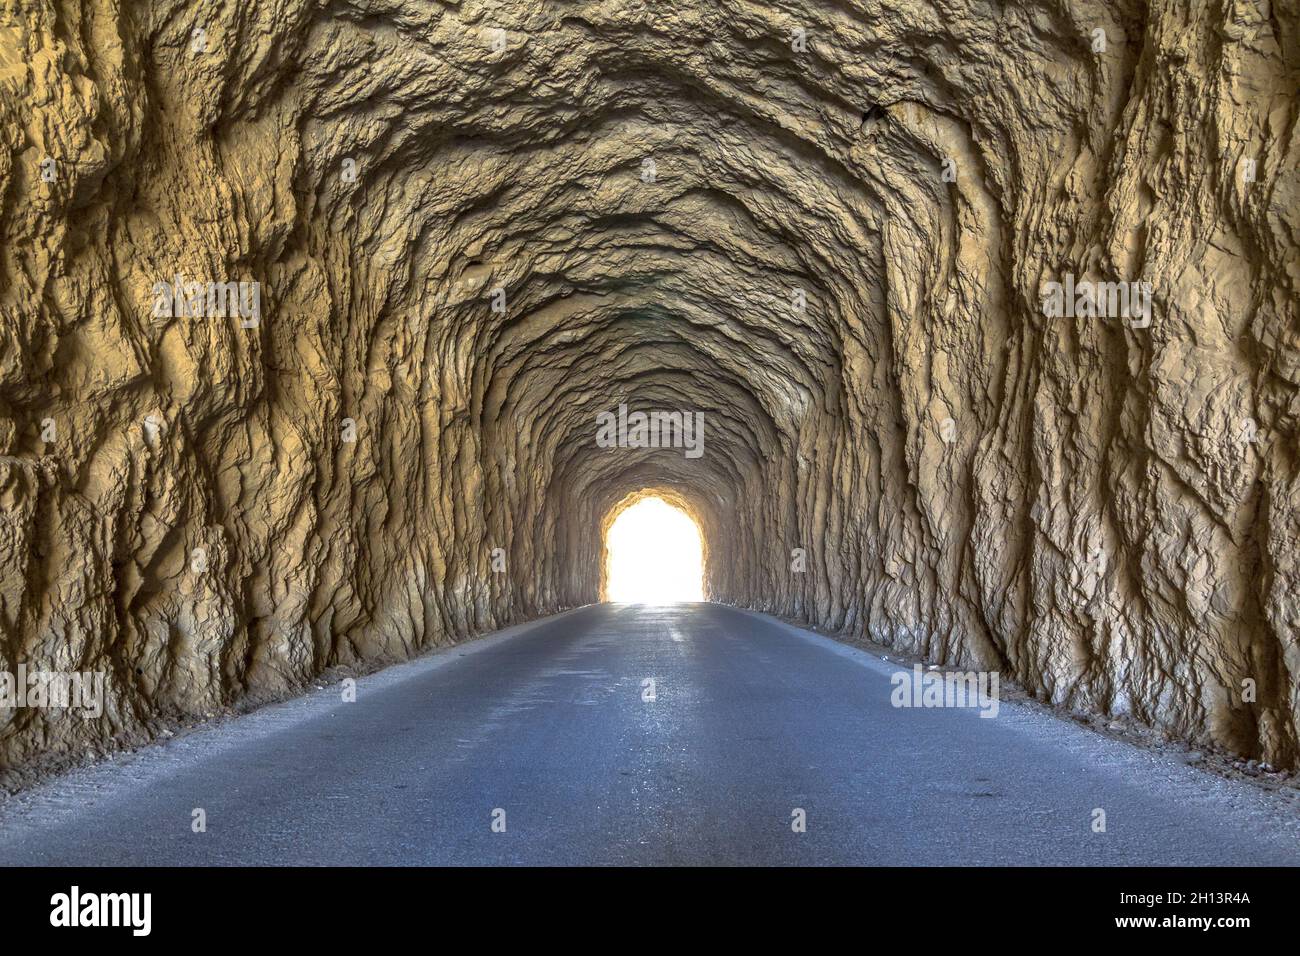 Helles Licht am Ende des Tunnels. Uralter Tunnel mit rauhen Wänden. Stockfoto